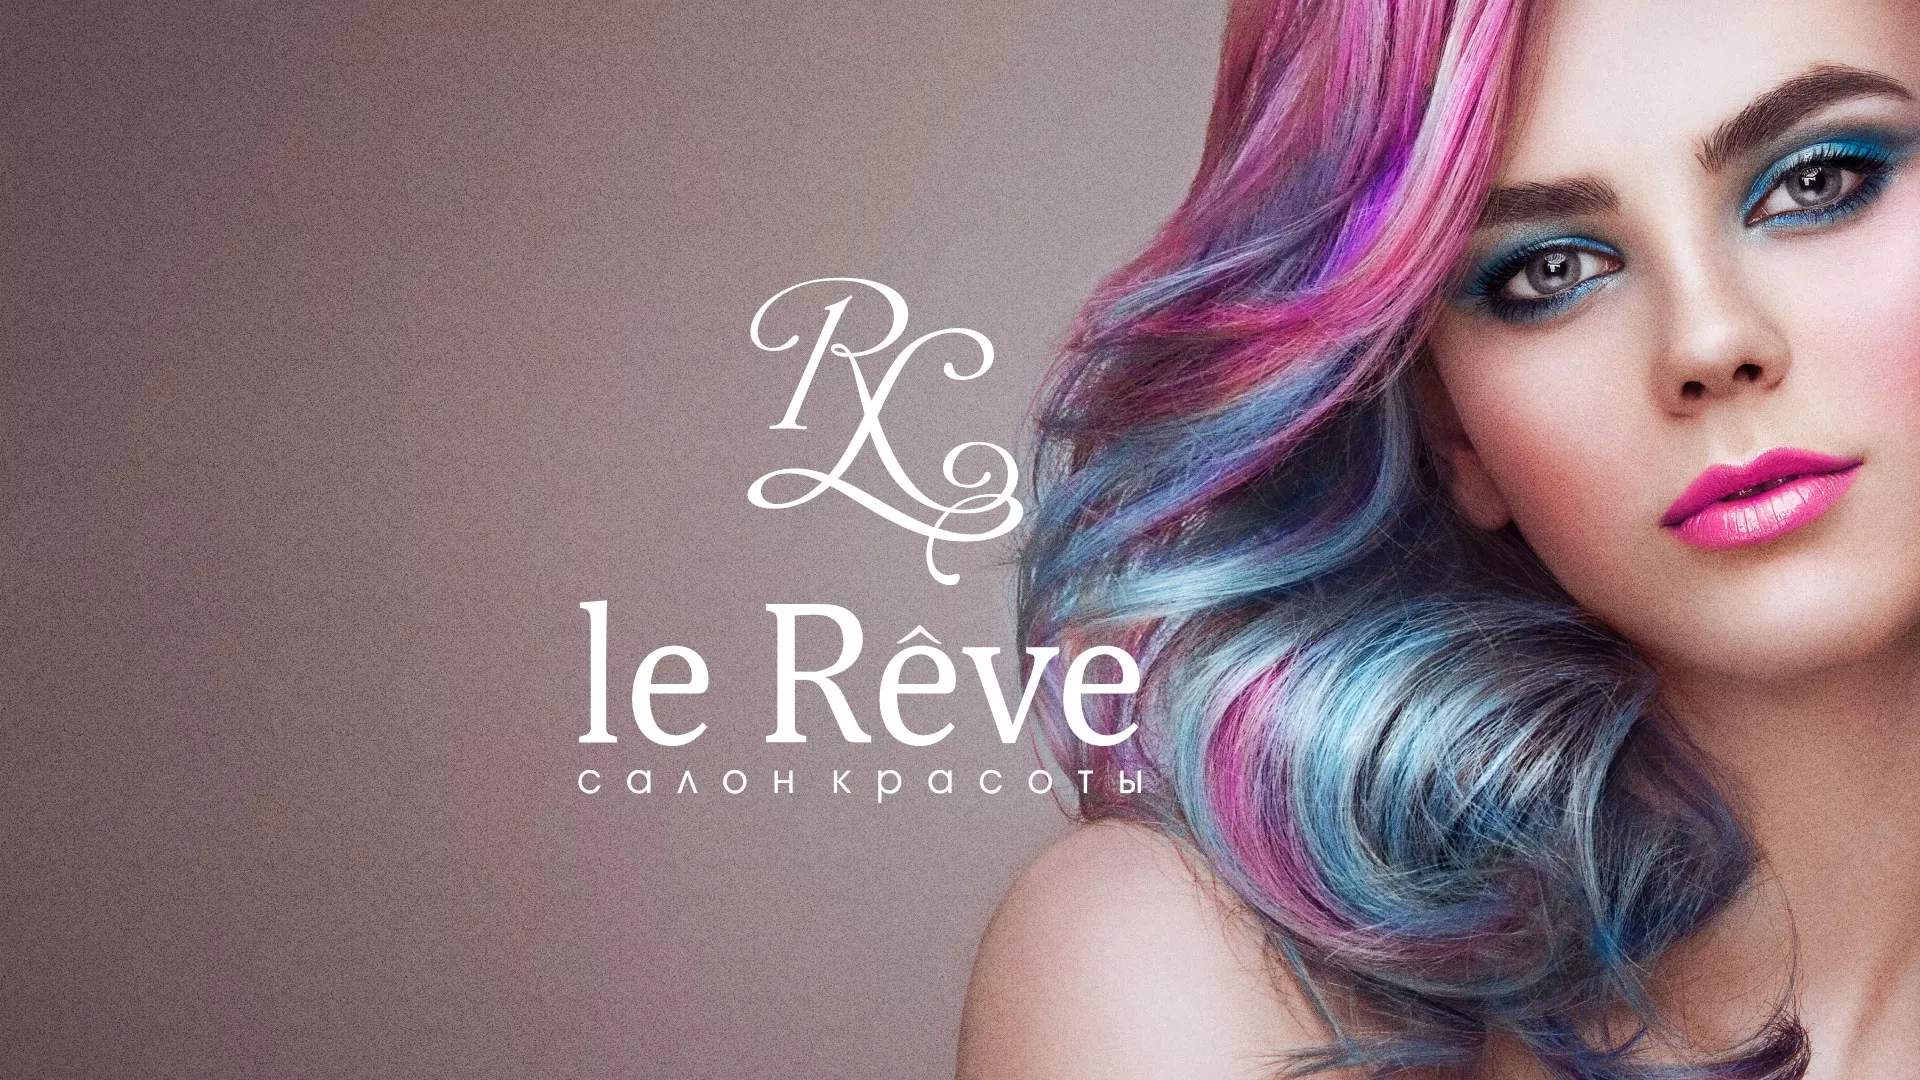 Создание сайта для салона красоты «Le Reve» в Железнодорожном